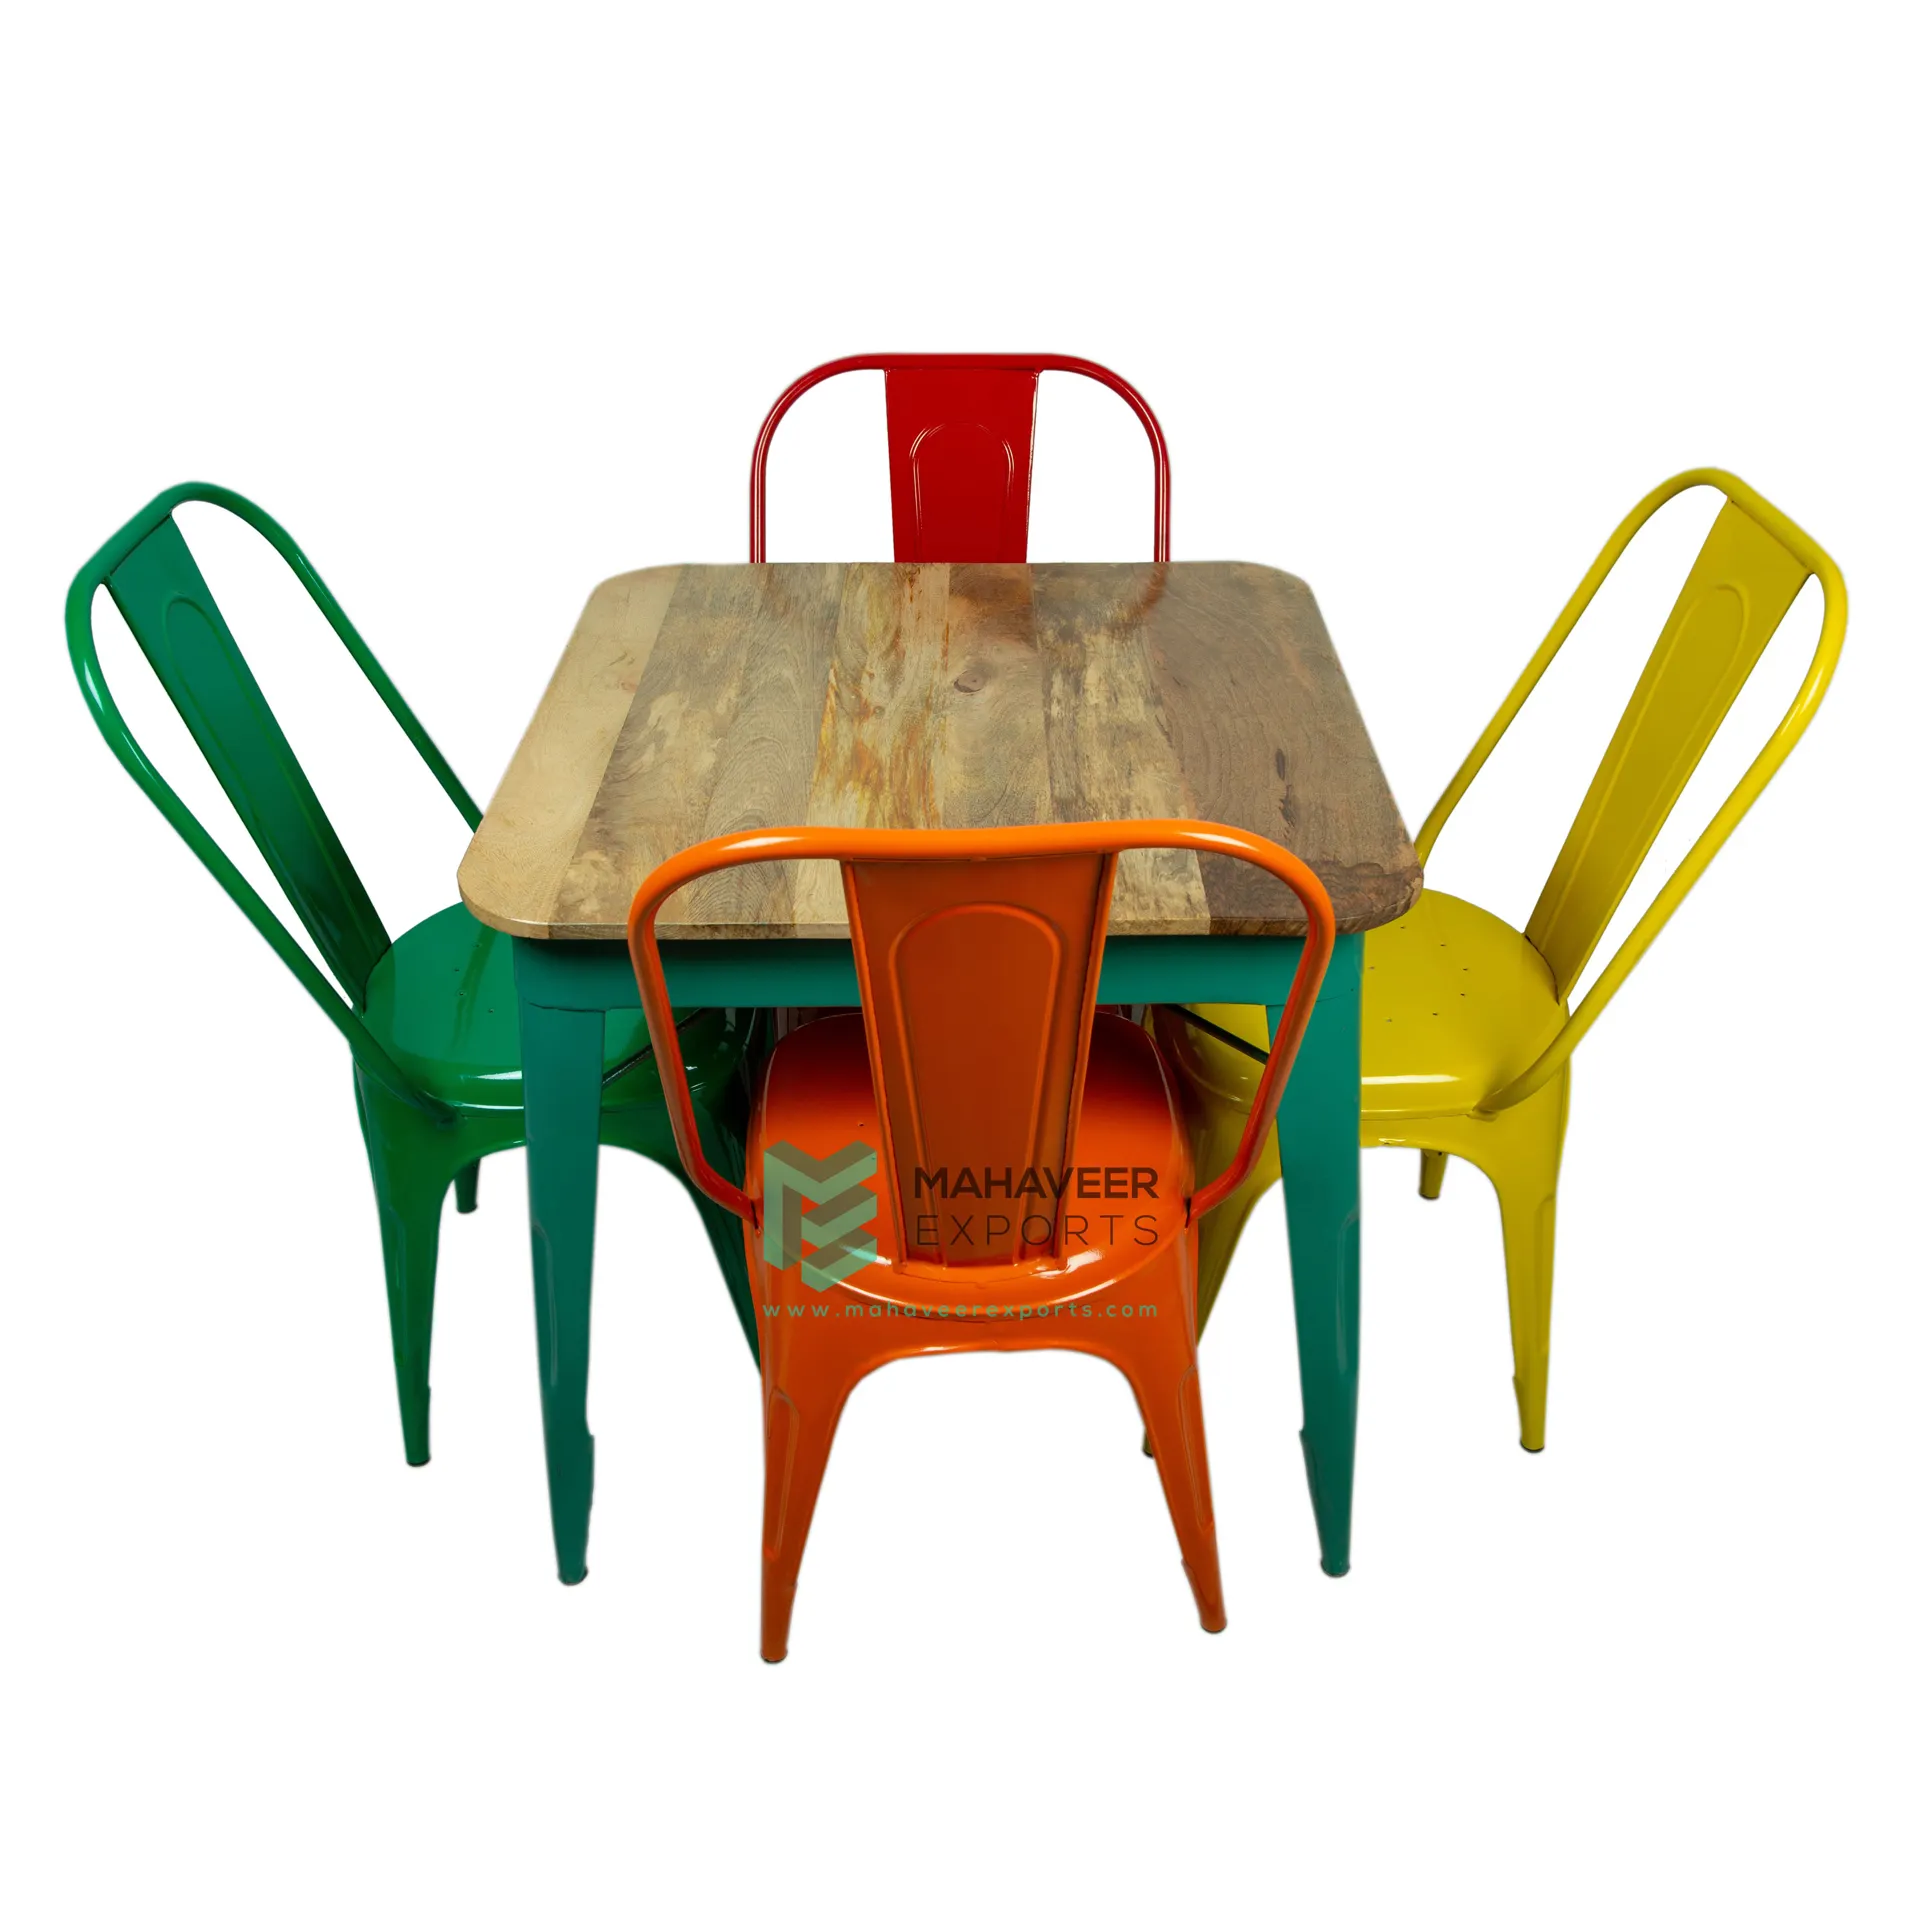 Table à manger carrée en bois de Style Restaurant et fer intérieur-extérieur avec 4 chaises empilées-jaune/vert/Orange/rouge